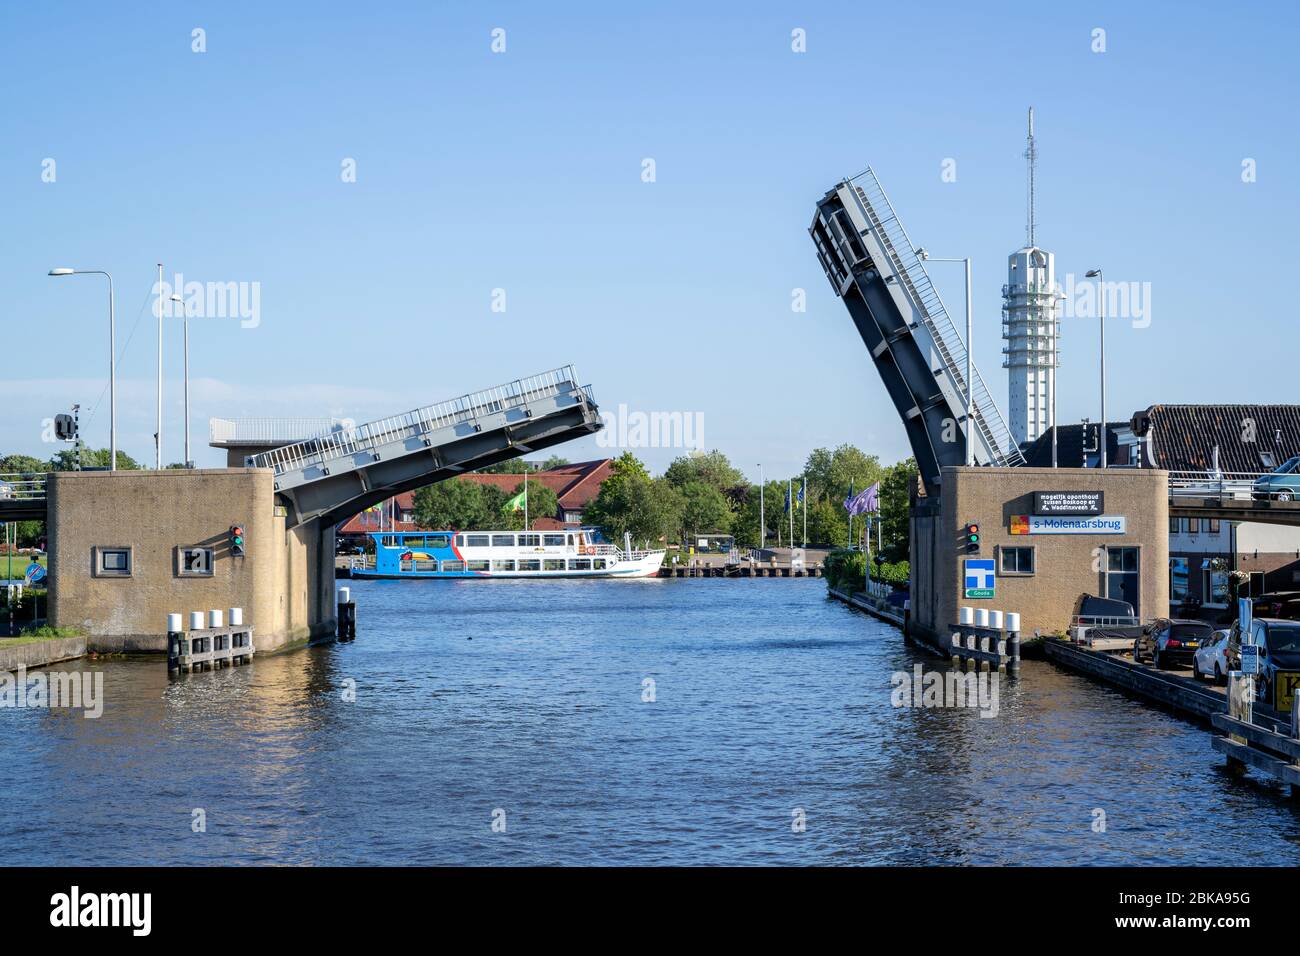 s-Molenaarsbrug bascule bridge over Heimanswetering waterway Stock Photo